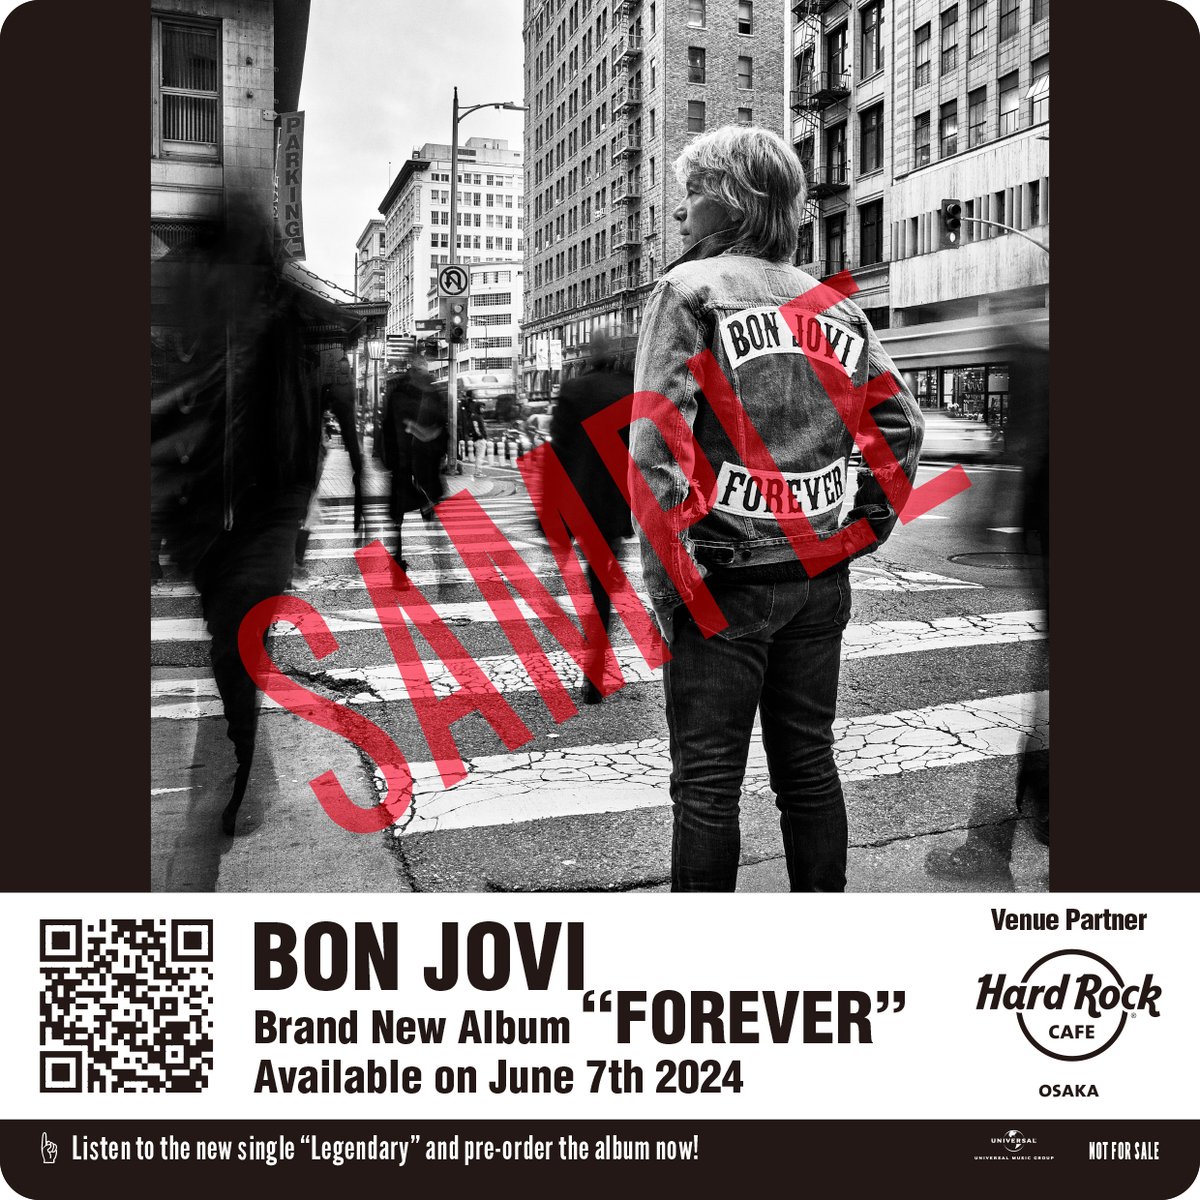 デビュー40周年を迎えたボン・ジョヴィ（@bonjovi_jp）のニューアルバム「フォーエヴァー」の発売を記念したイベントが5月21日（火）からスタート！

✨イベント詳細はこちらから✨
hardrockjapan.com/event

#HardRockCafe #ハードロックカフェ #BonJovi #ボンジョヴィ #BonJovi40